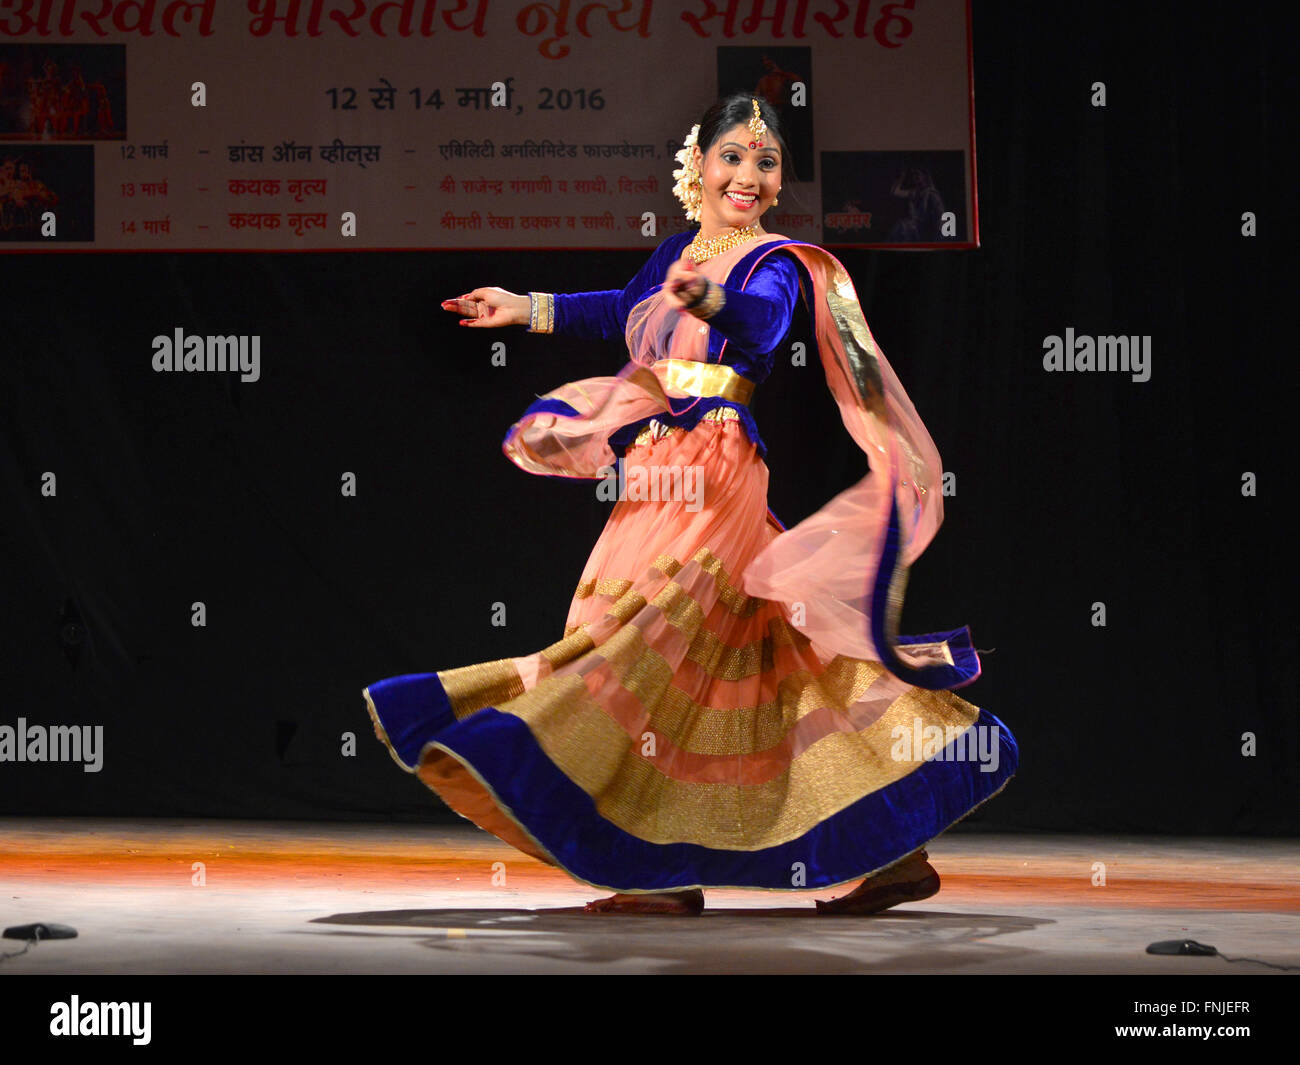 La danse Kathak Kathak dancer dans le dernier jour de l'ensemble Festival de danse organisé par l'Inde Rajasthan Sangeet Natak Akademi au Town Hall à Jodhpur, Rajasthan, Inde. (Photo de Mohammed Sharif / Pacific Press) Banque D'Images